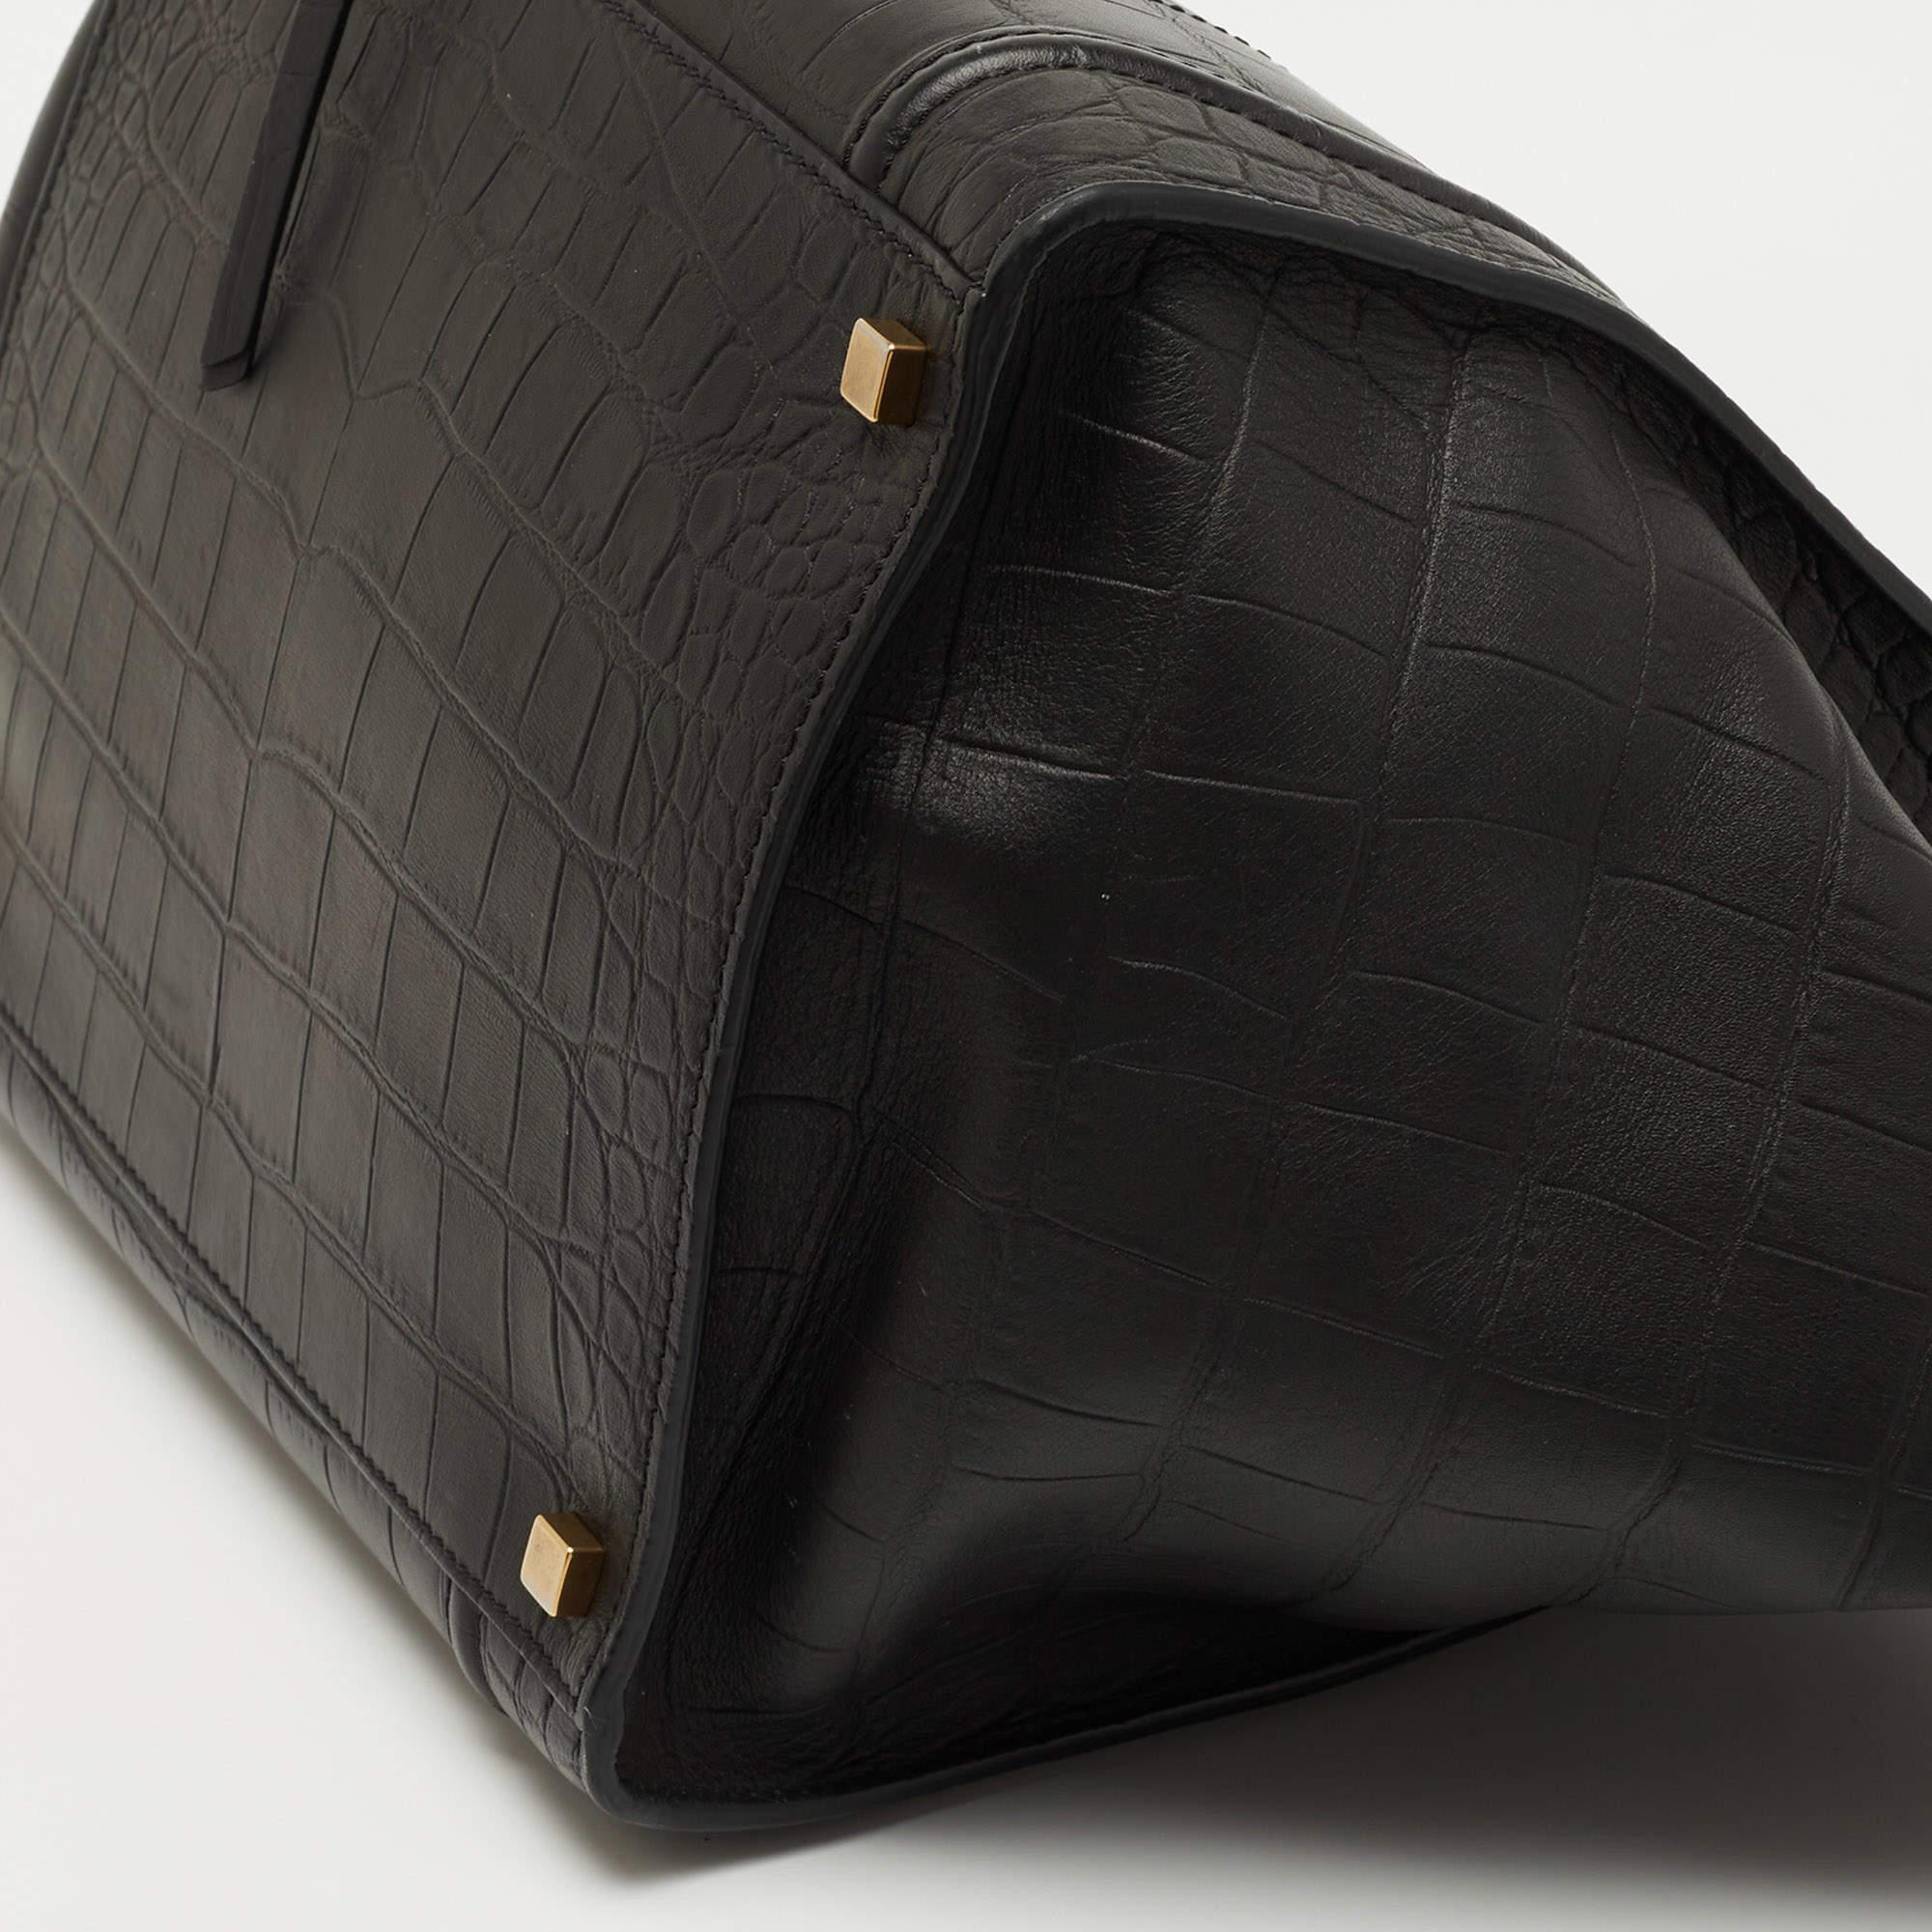 Celine Black Croc Embossed Leather Medium Phantom Luggage Tote 7